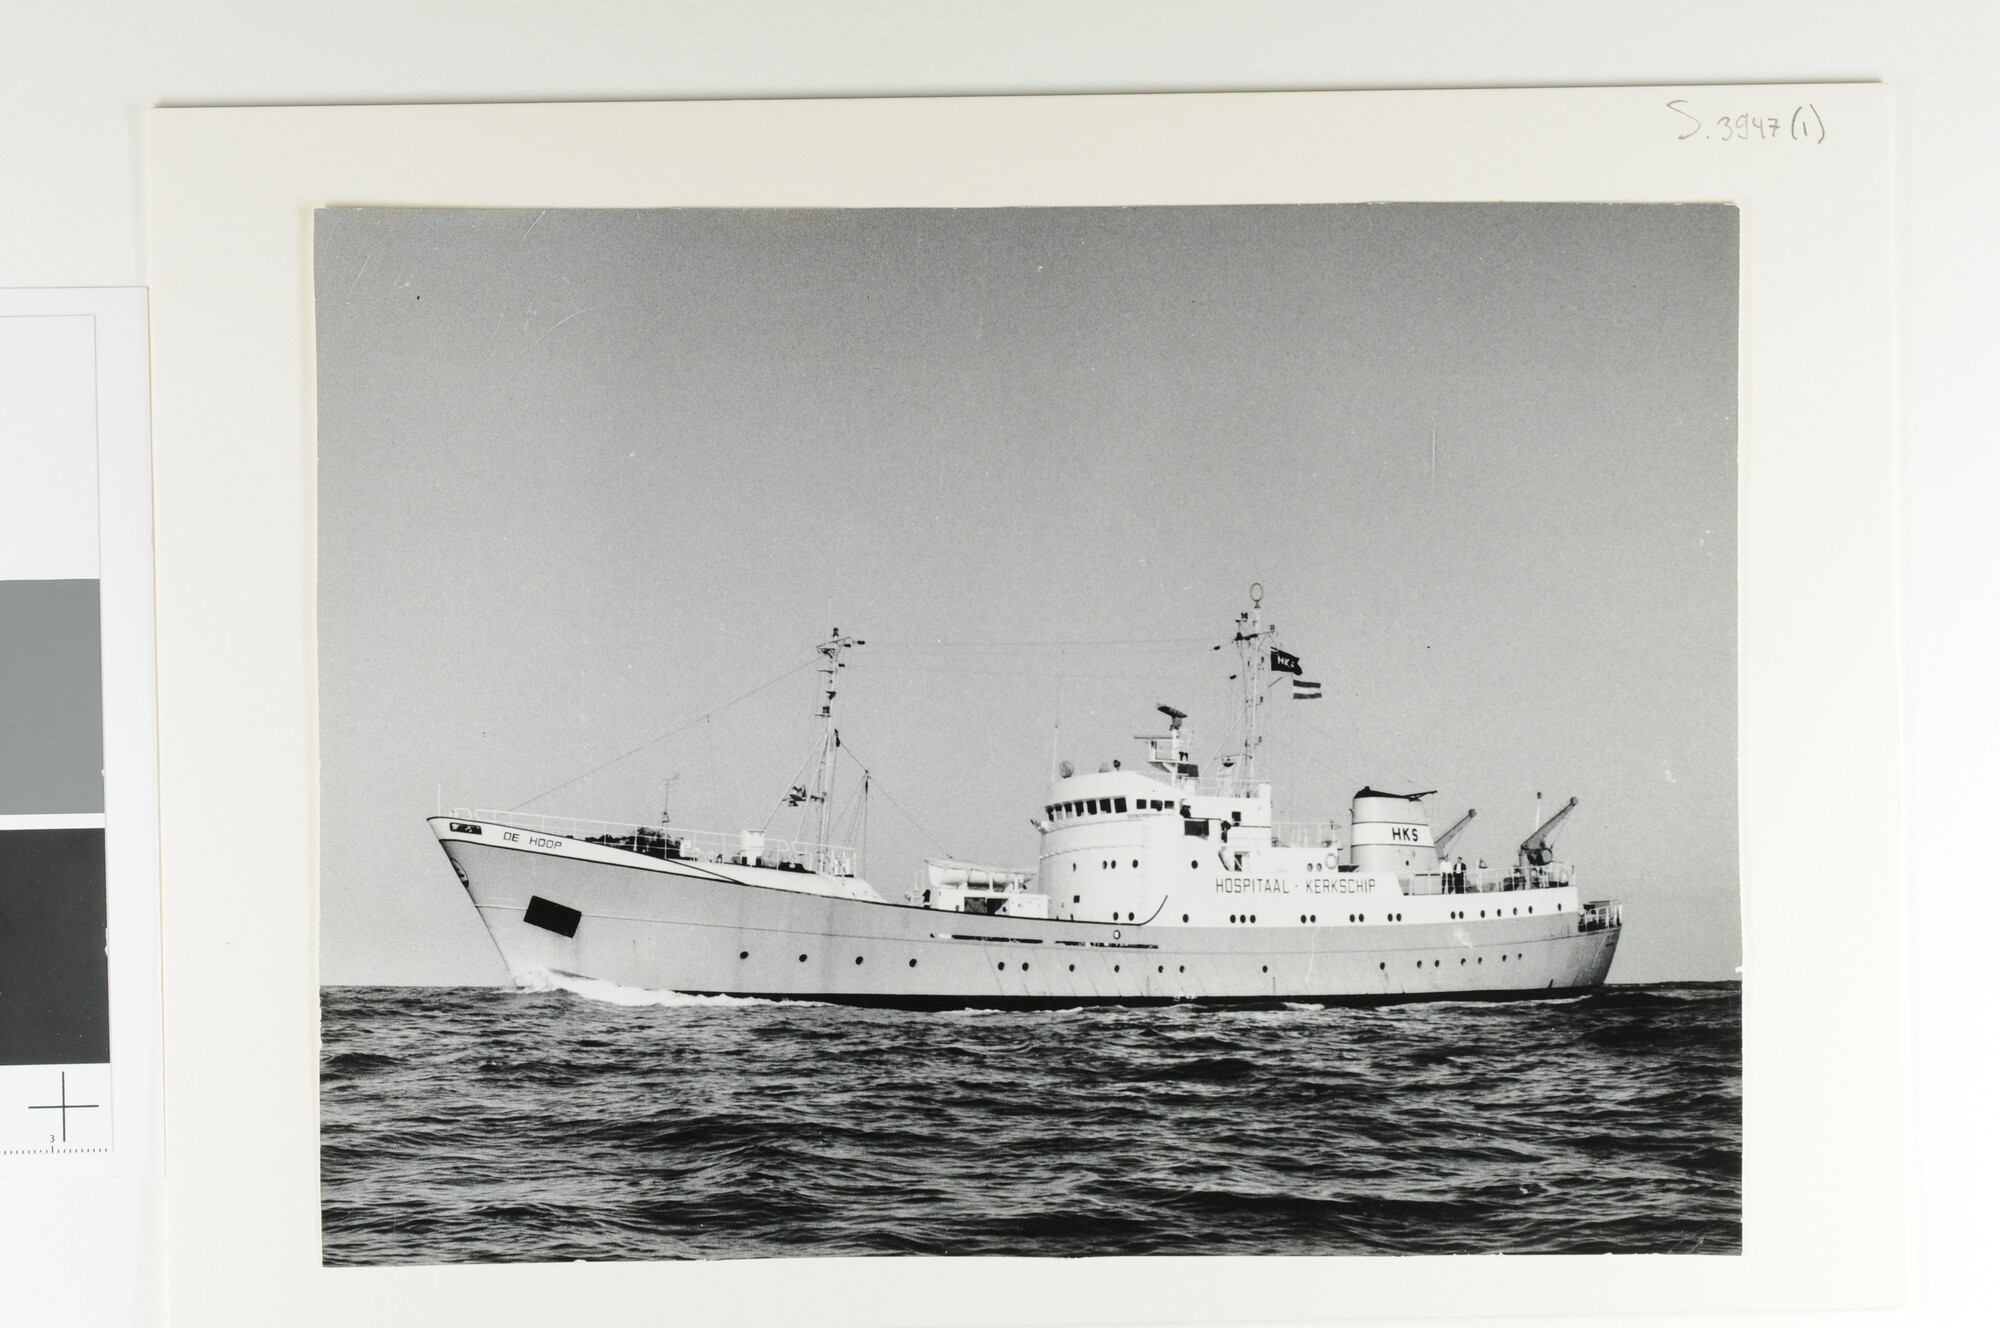 S.3947(01); Het hospitaalkerkschip De Hoop op zee (bakboordaangezicht); foto